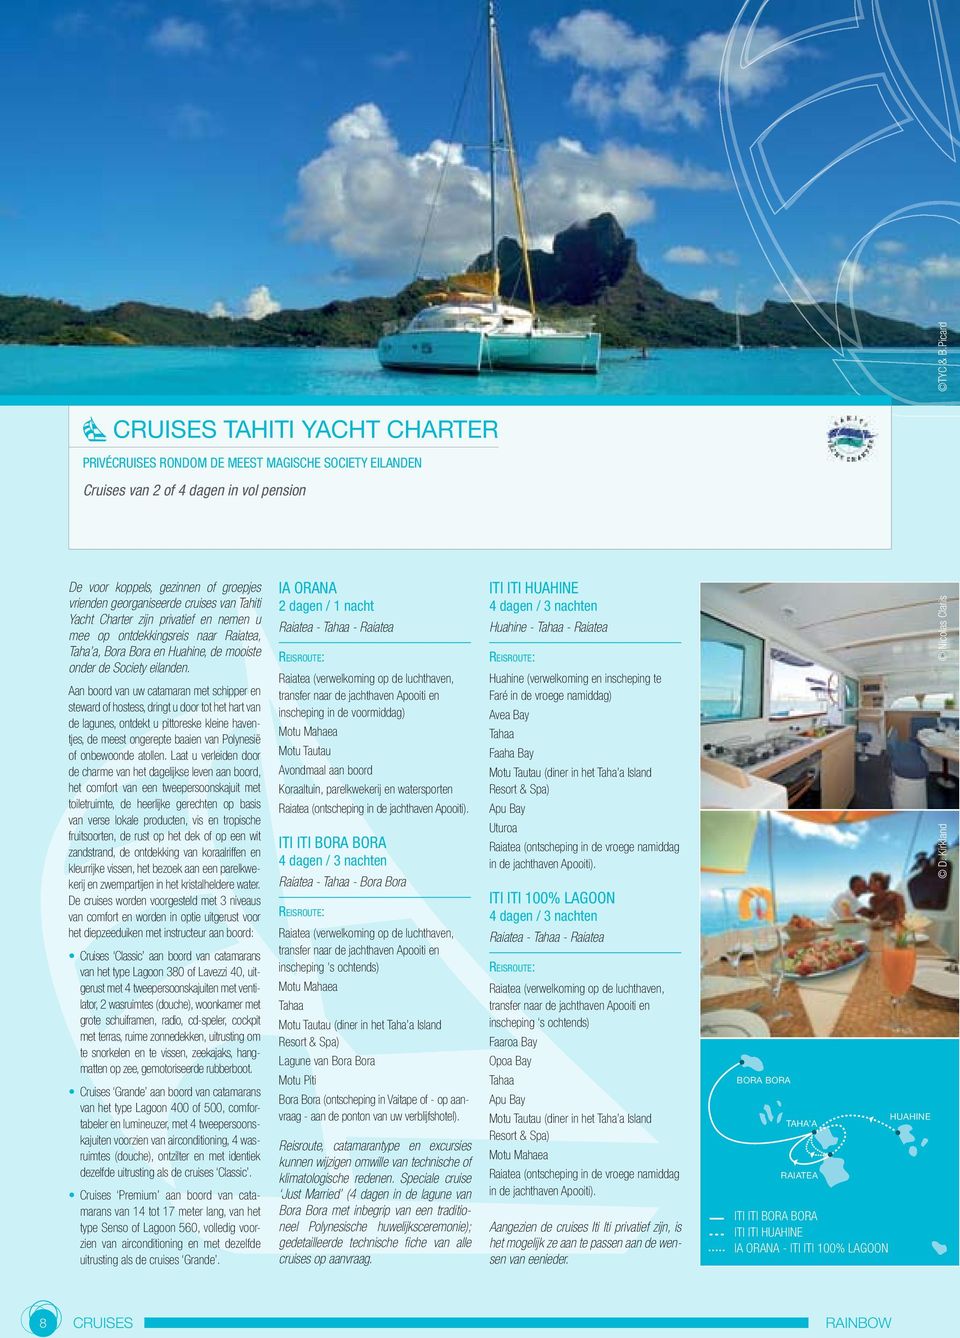 georganiseerde cruises van Tahiti Yacht Charter zijn privatief en nemen u mee op ontdekkingsreis naar Raiatea, Taha a, Bora Bora en Huahine, de mooiste onder de Society eilanden.